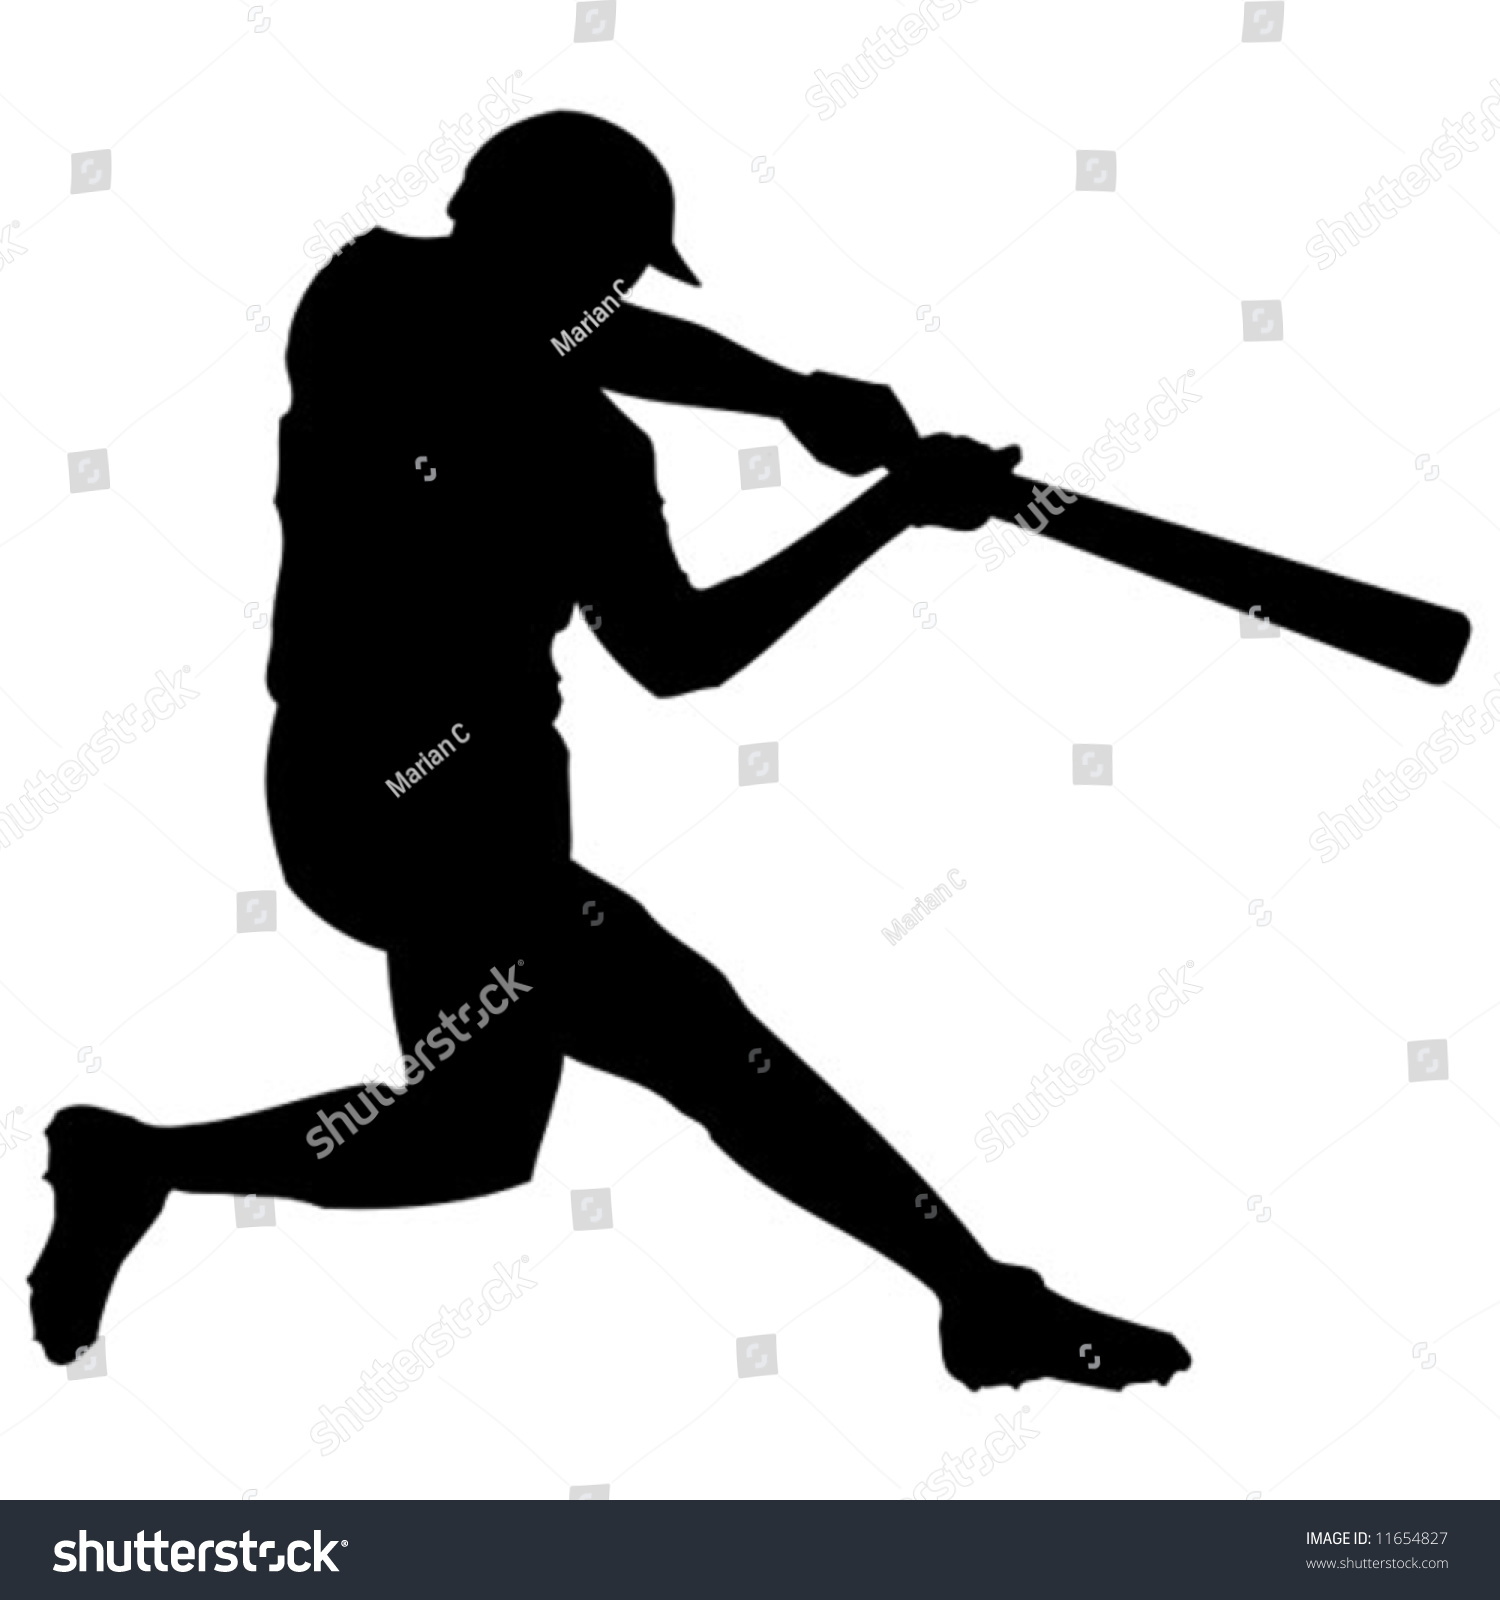 Baseball Player Silhouette Stock Vector Illustration 11654827 ...